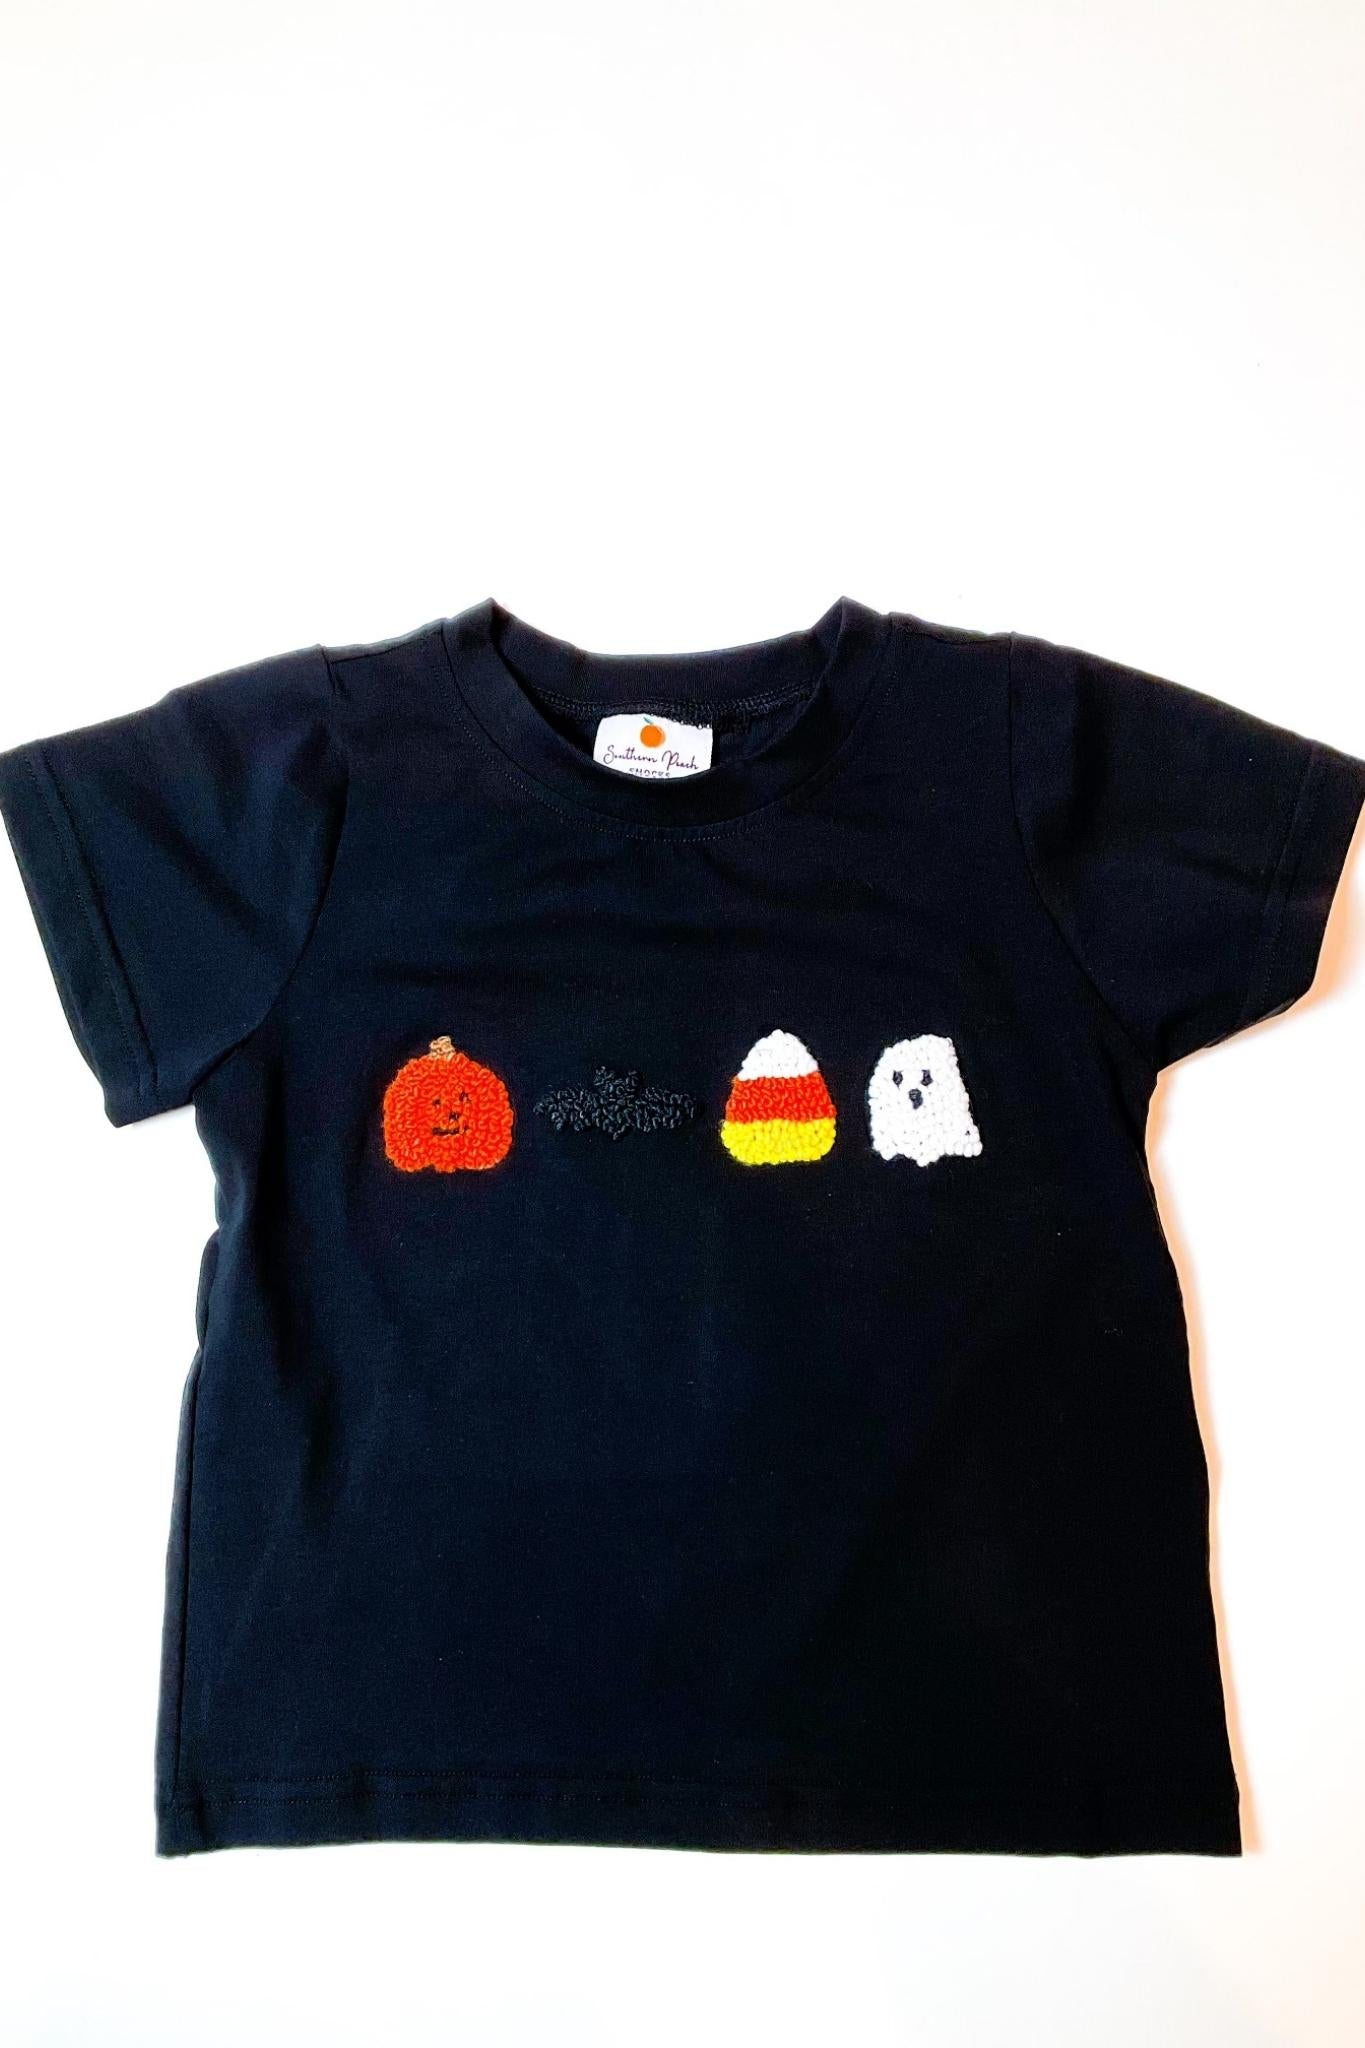 Boy's Halloween T-shirt (shirt only)